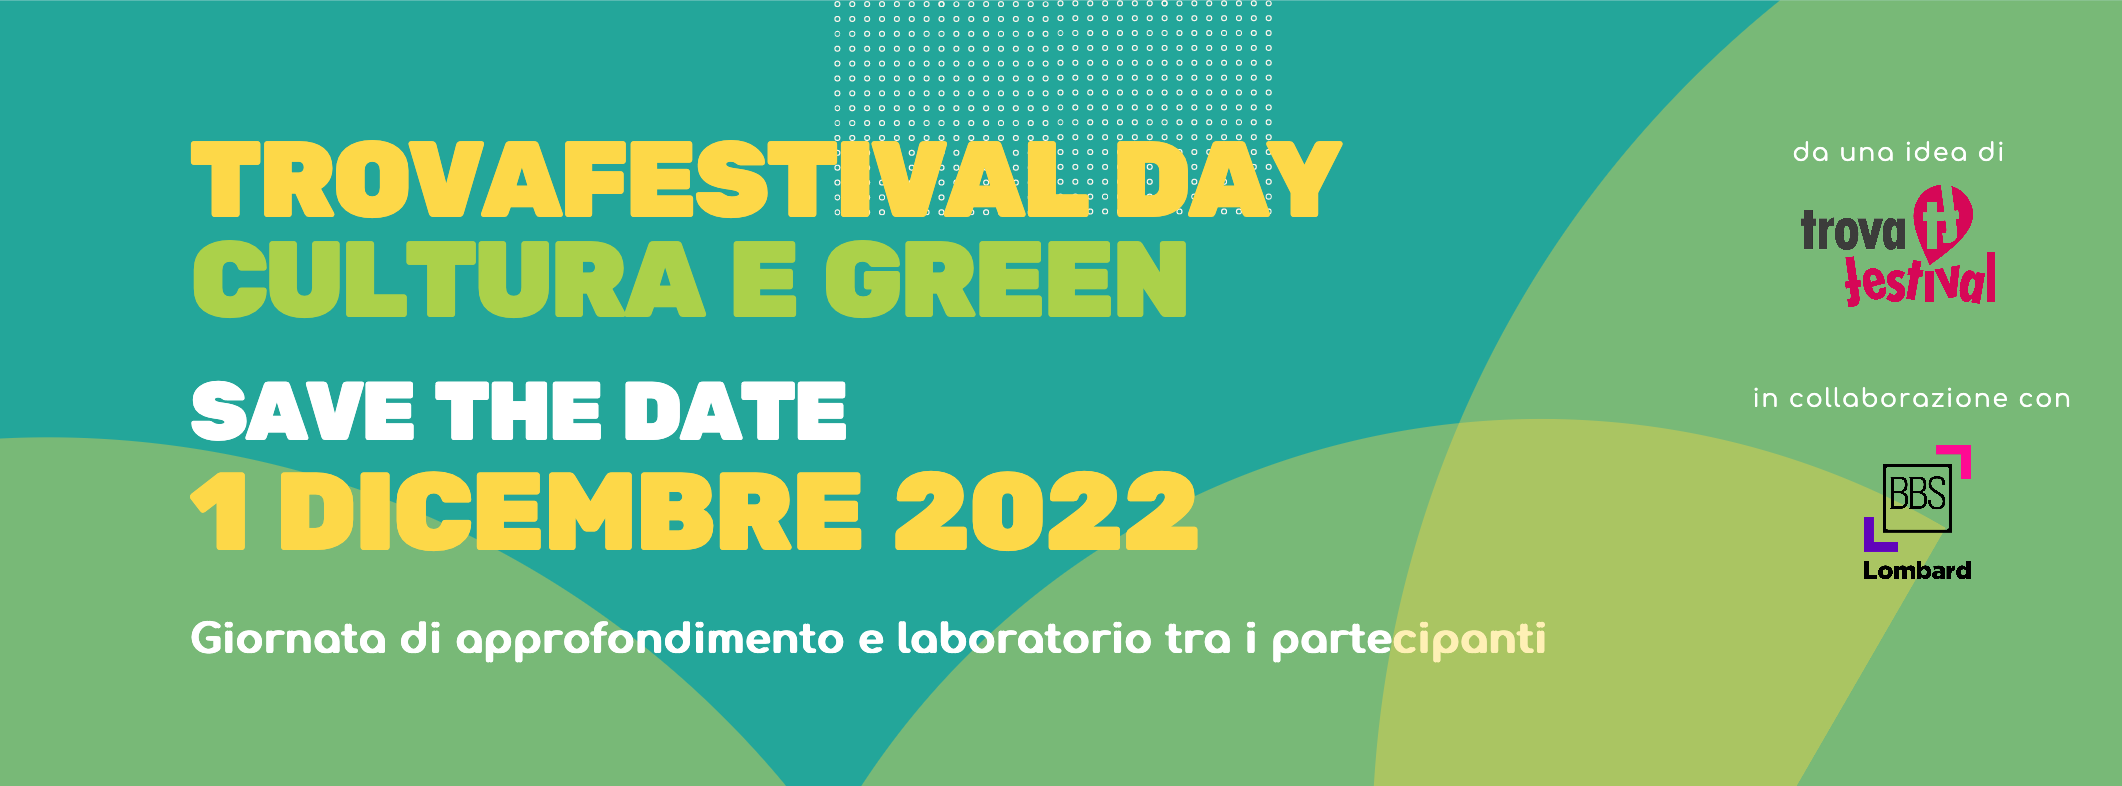 TrovaFestival Day - Cultura e Green